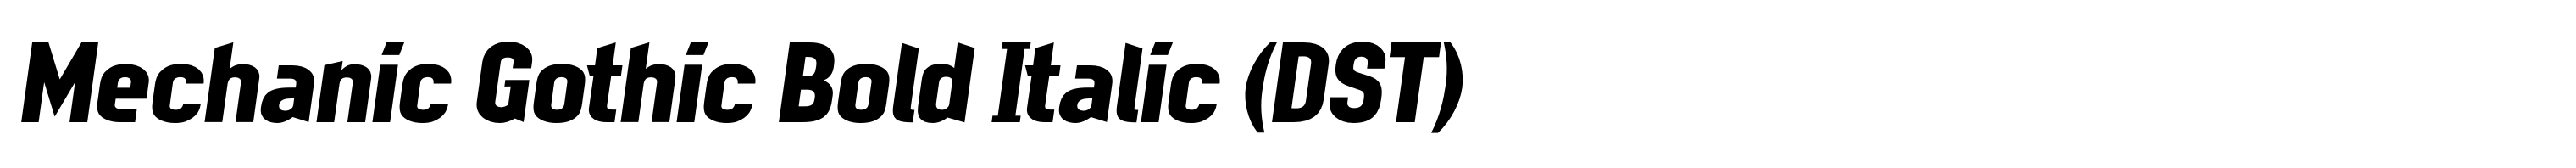 Mechanic Gothic Bold Italic (DST)